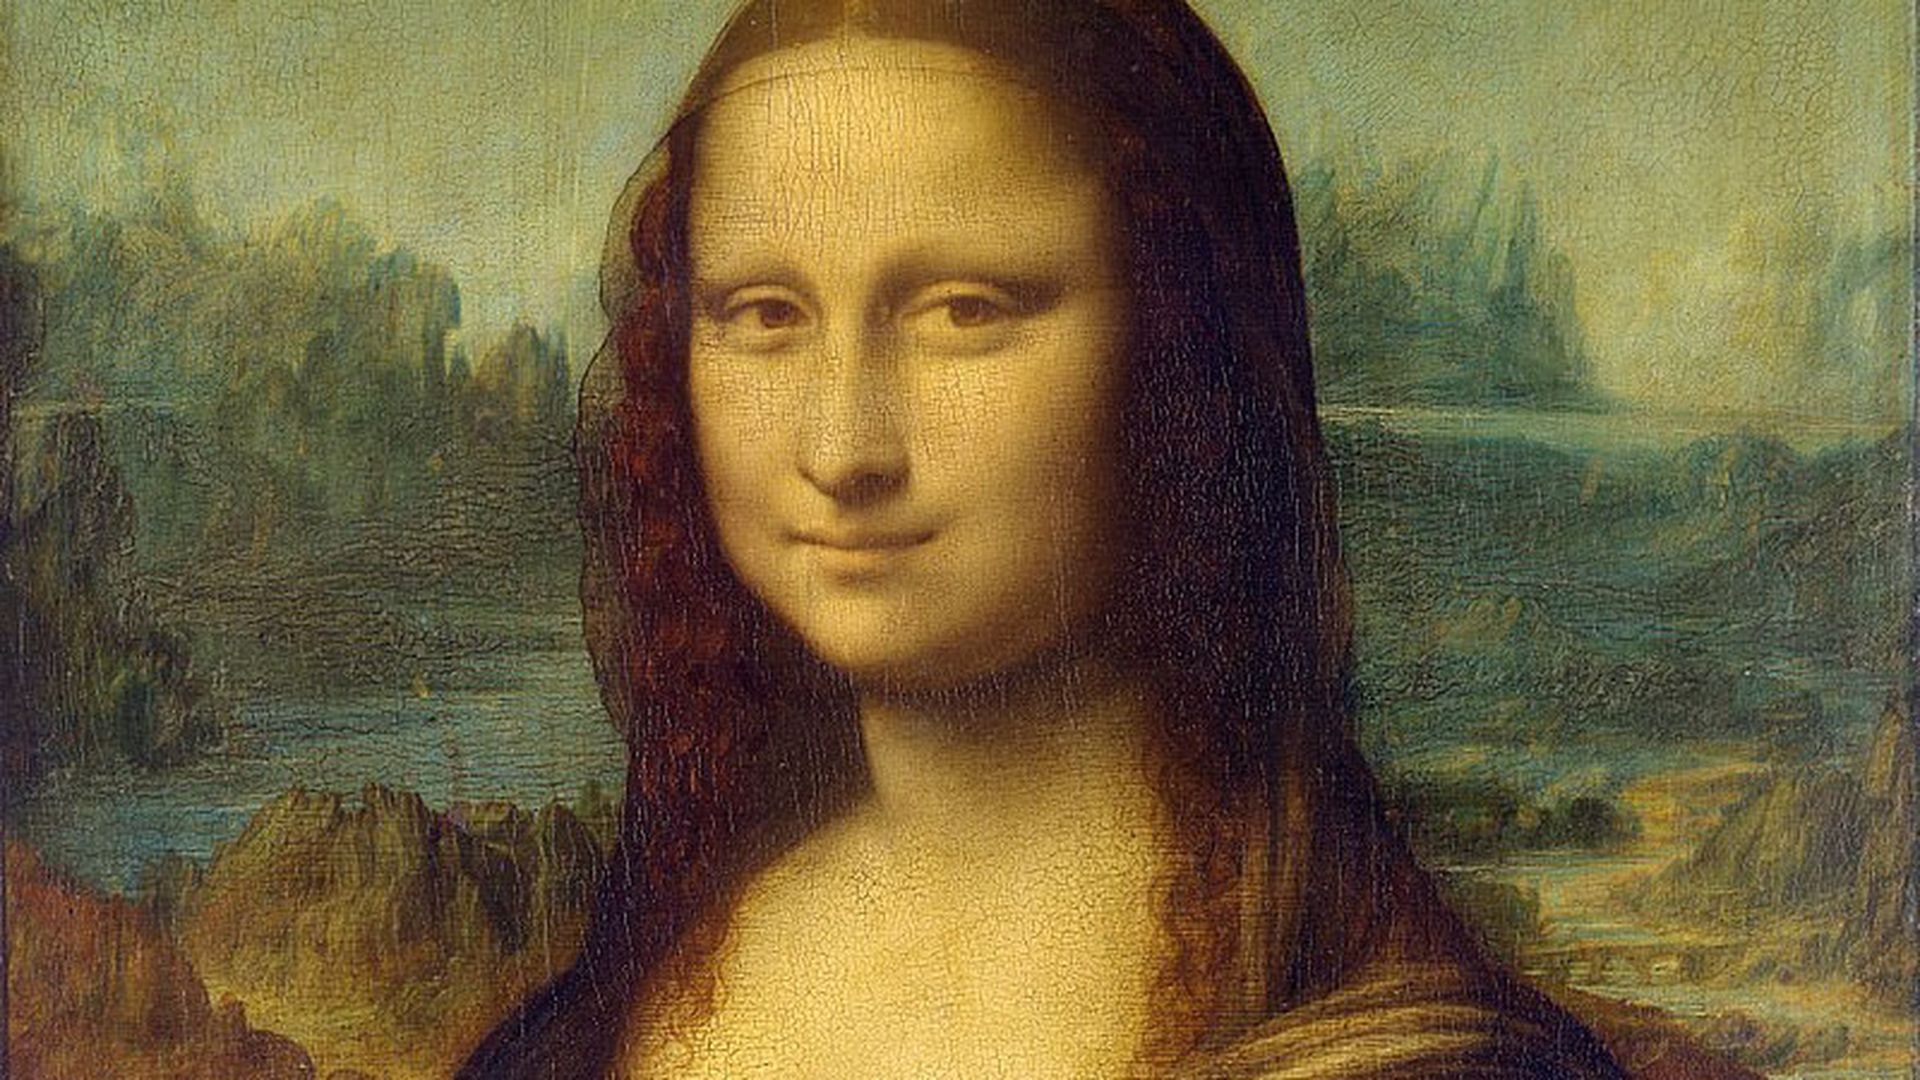 Бизнесмен предложил властям Франции продать картину да Винчи «Мона Лиза» за €50 млрд чтобы выйти из кризиса